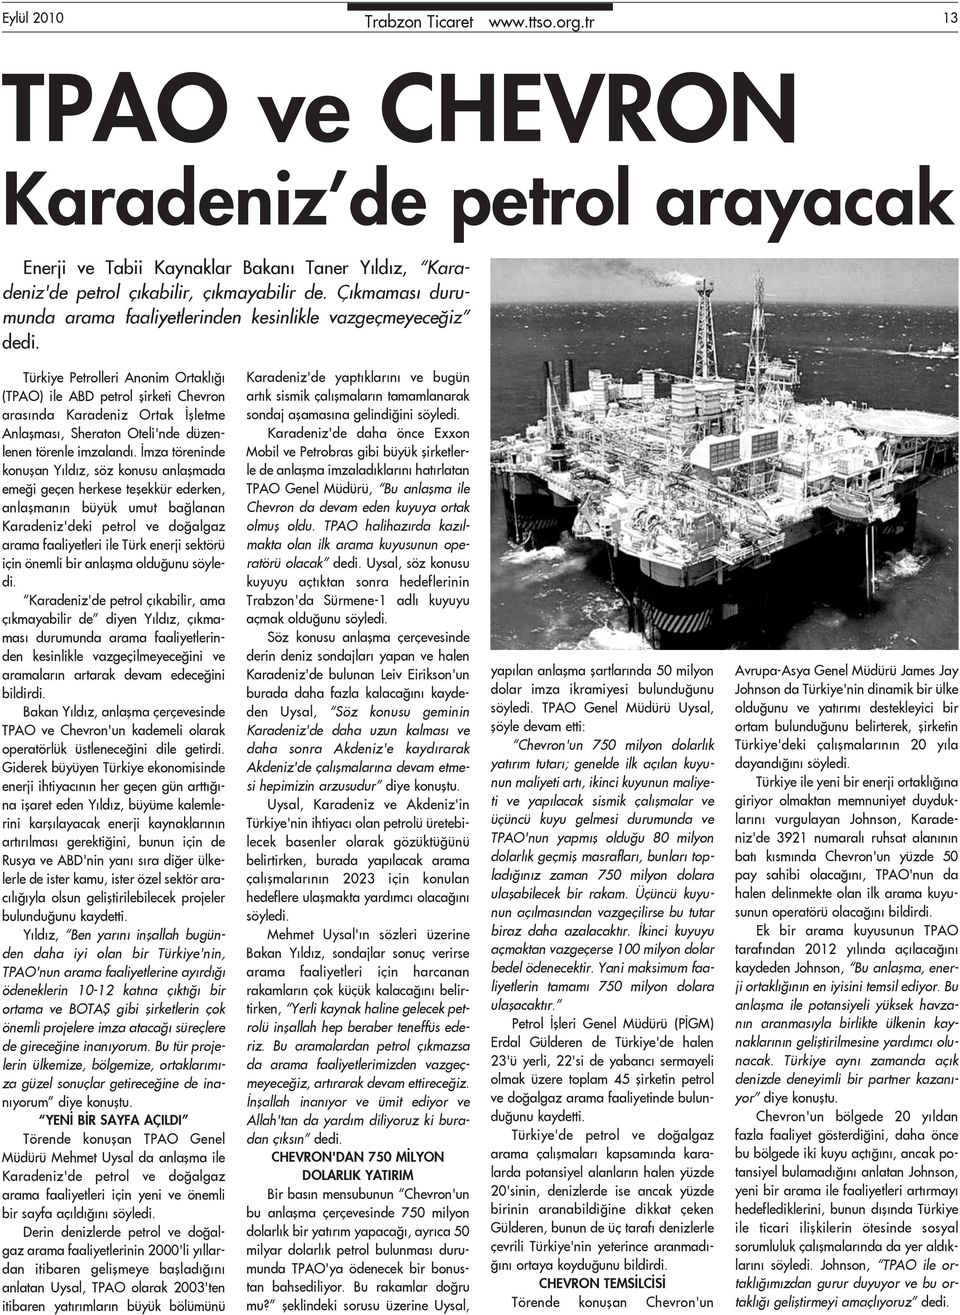 Türkiye Petrolleri Anonim Ortaklığı (TPAO) ile ABD petrol şirketi Chevron arasında Karadeniz Ortak İşletme Anlaşması, Sheraton Oteli'nde düzenlenen törenle imzalandı.